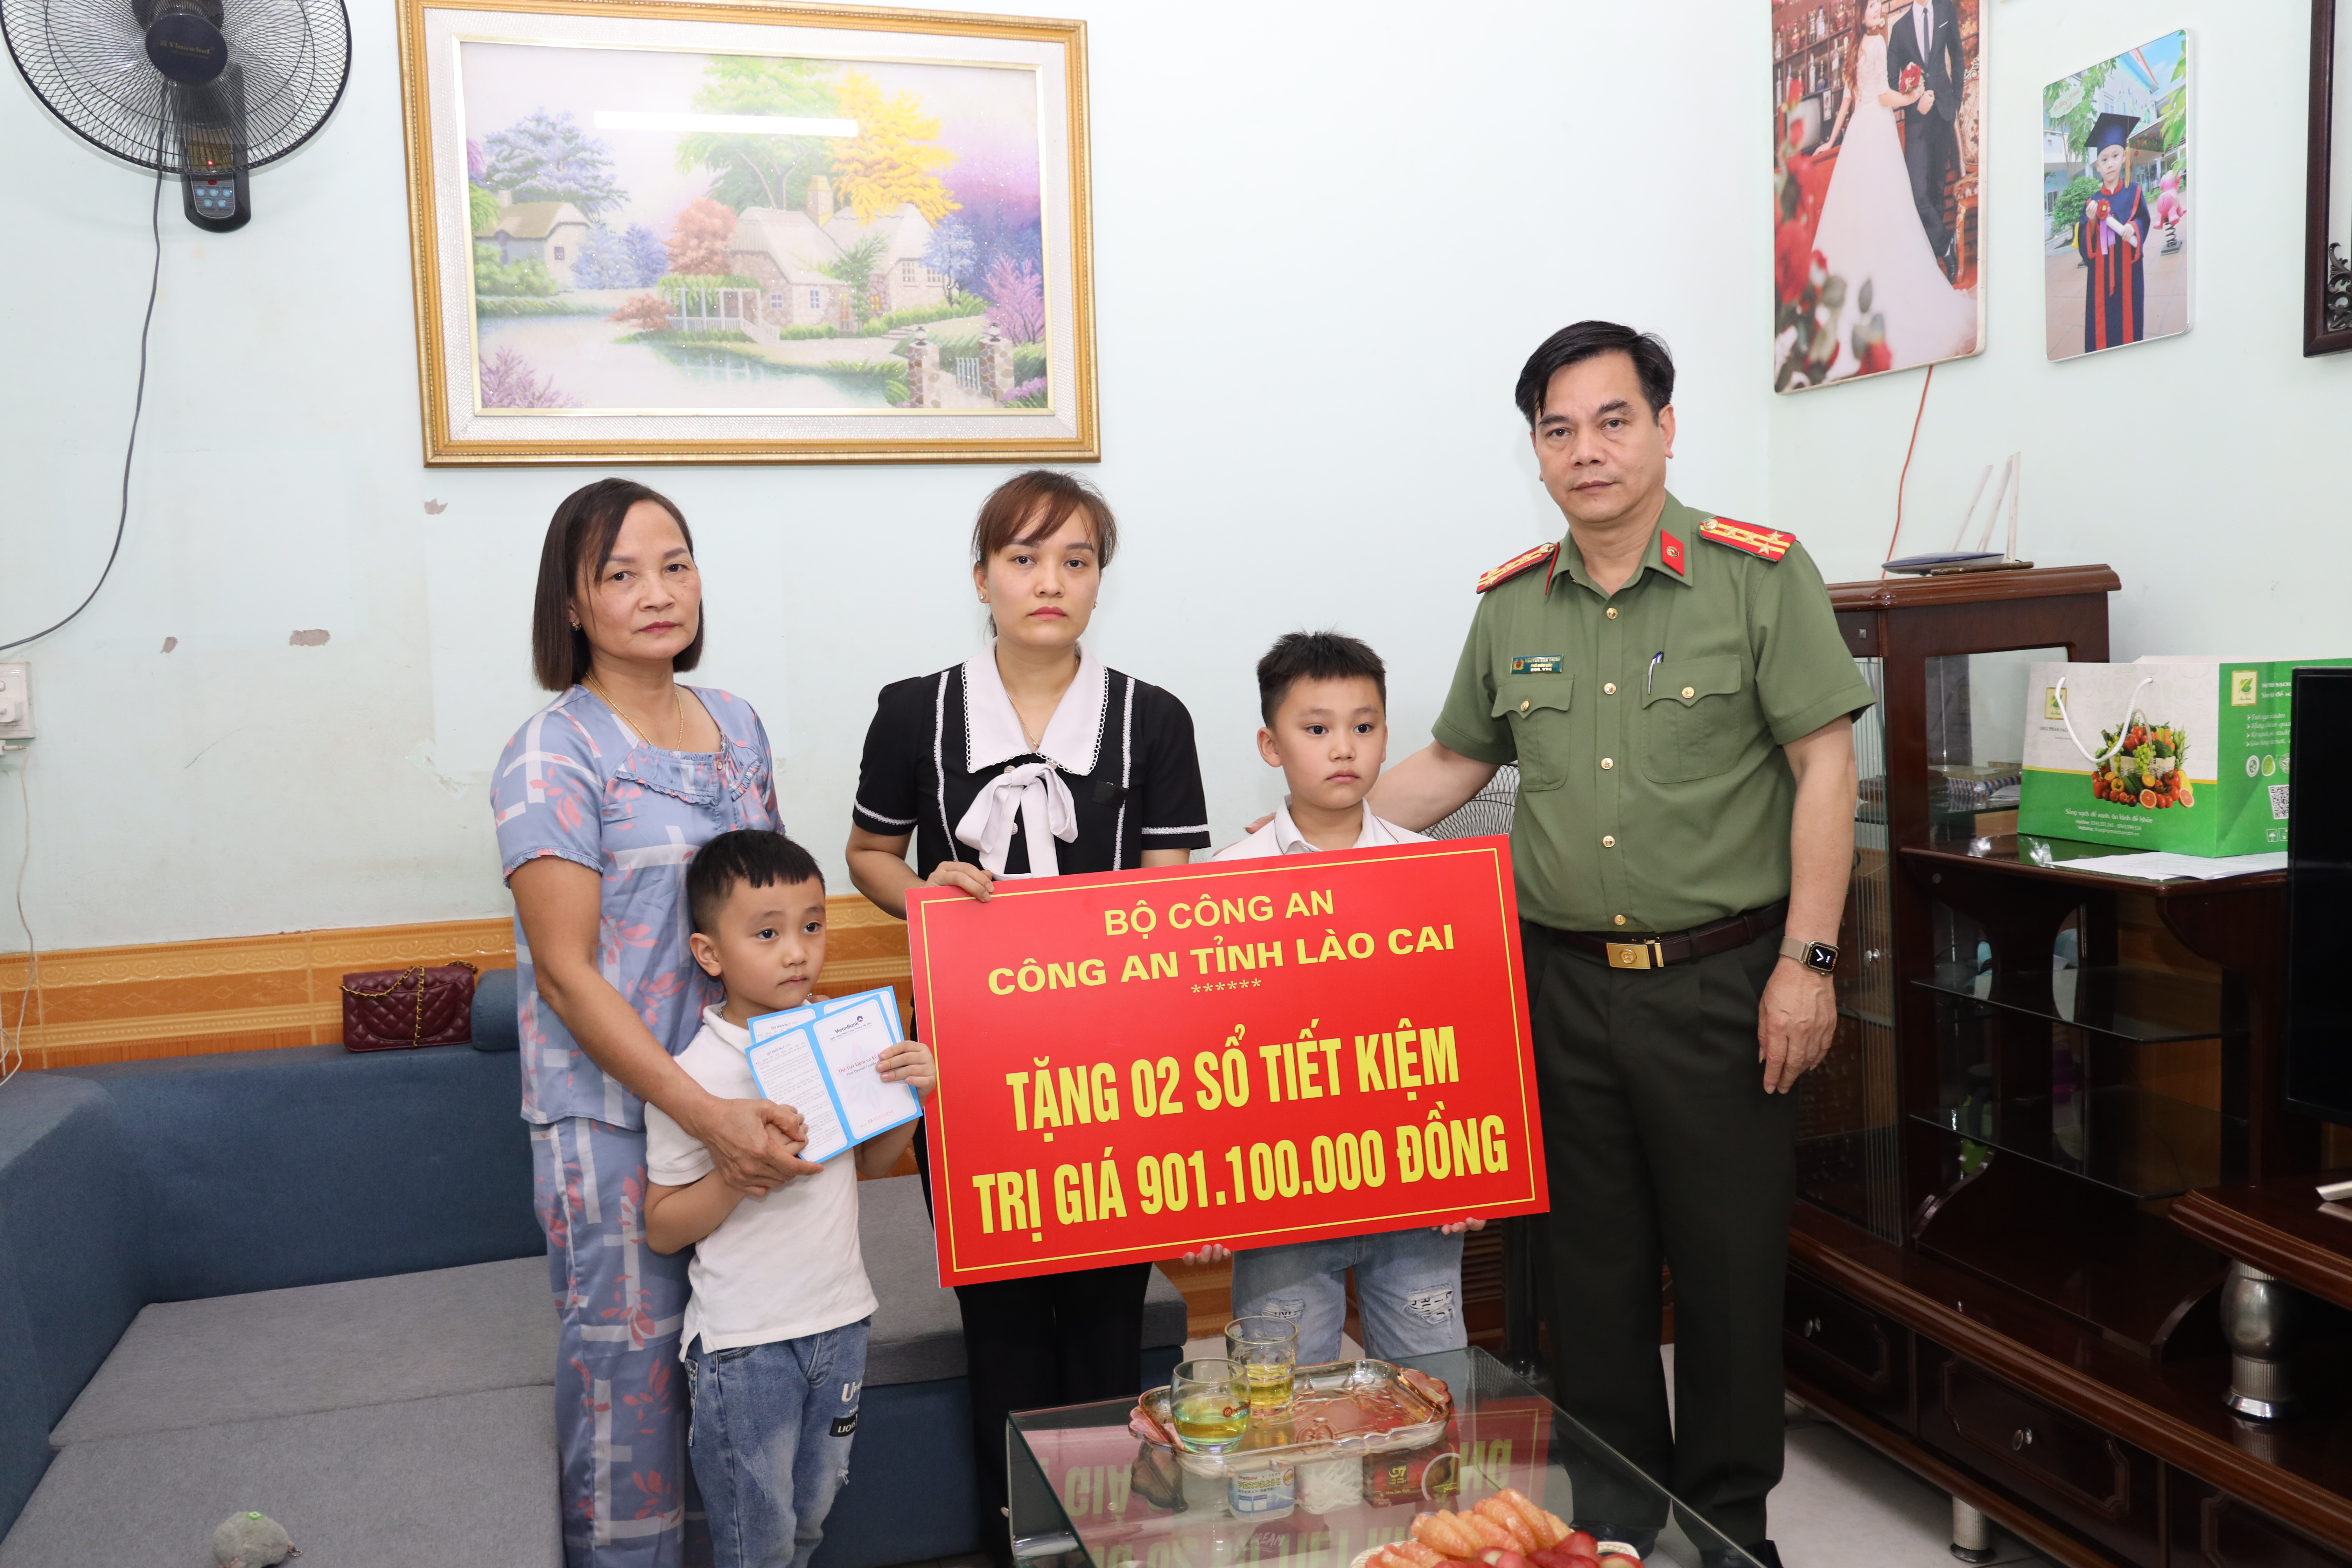 Đại tá Nguyễn Văn Thịnh - Phó giám đốc Công an tỉnh trao 02 sổ tiết kiệm cho gia đình.JPG